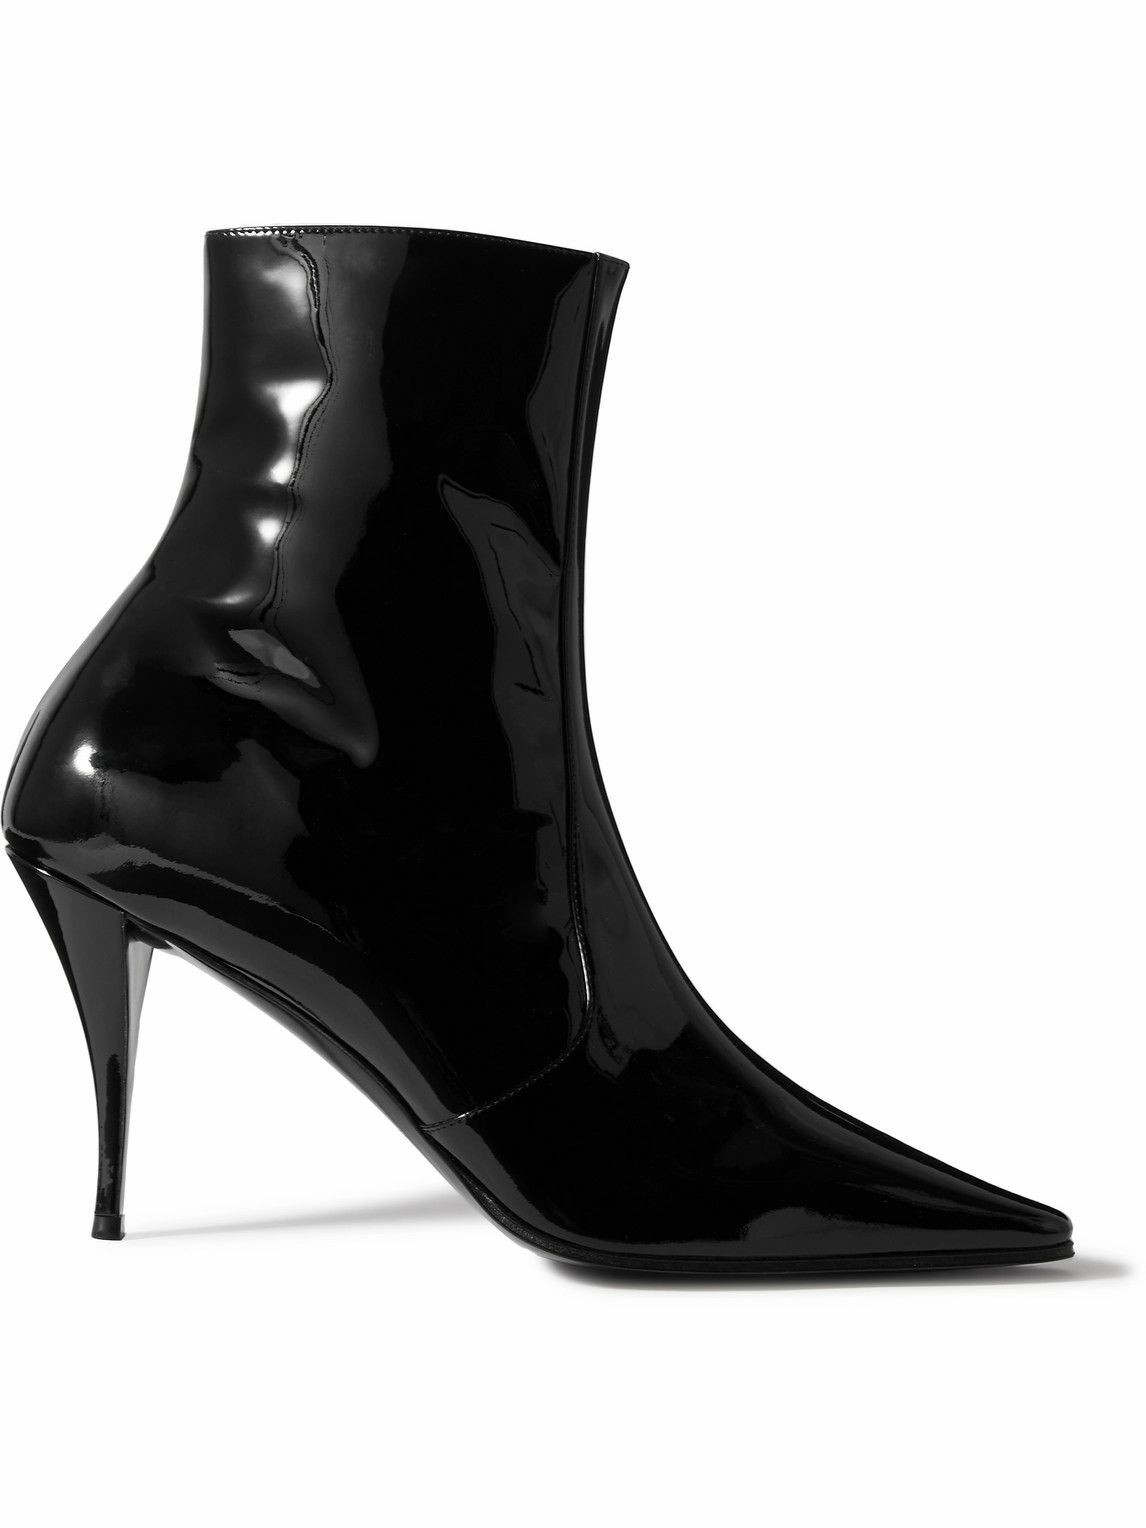 Photo: SAINT LAURENT - Ziggy Patent-Leather Chelsea Boots - Black